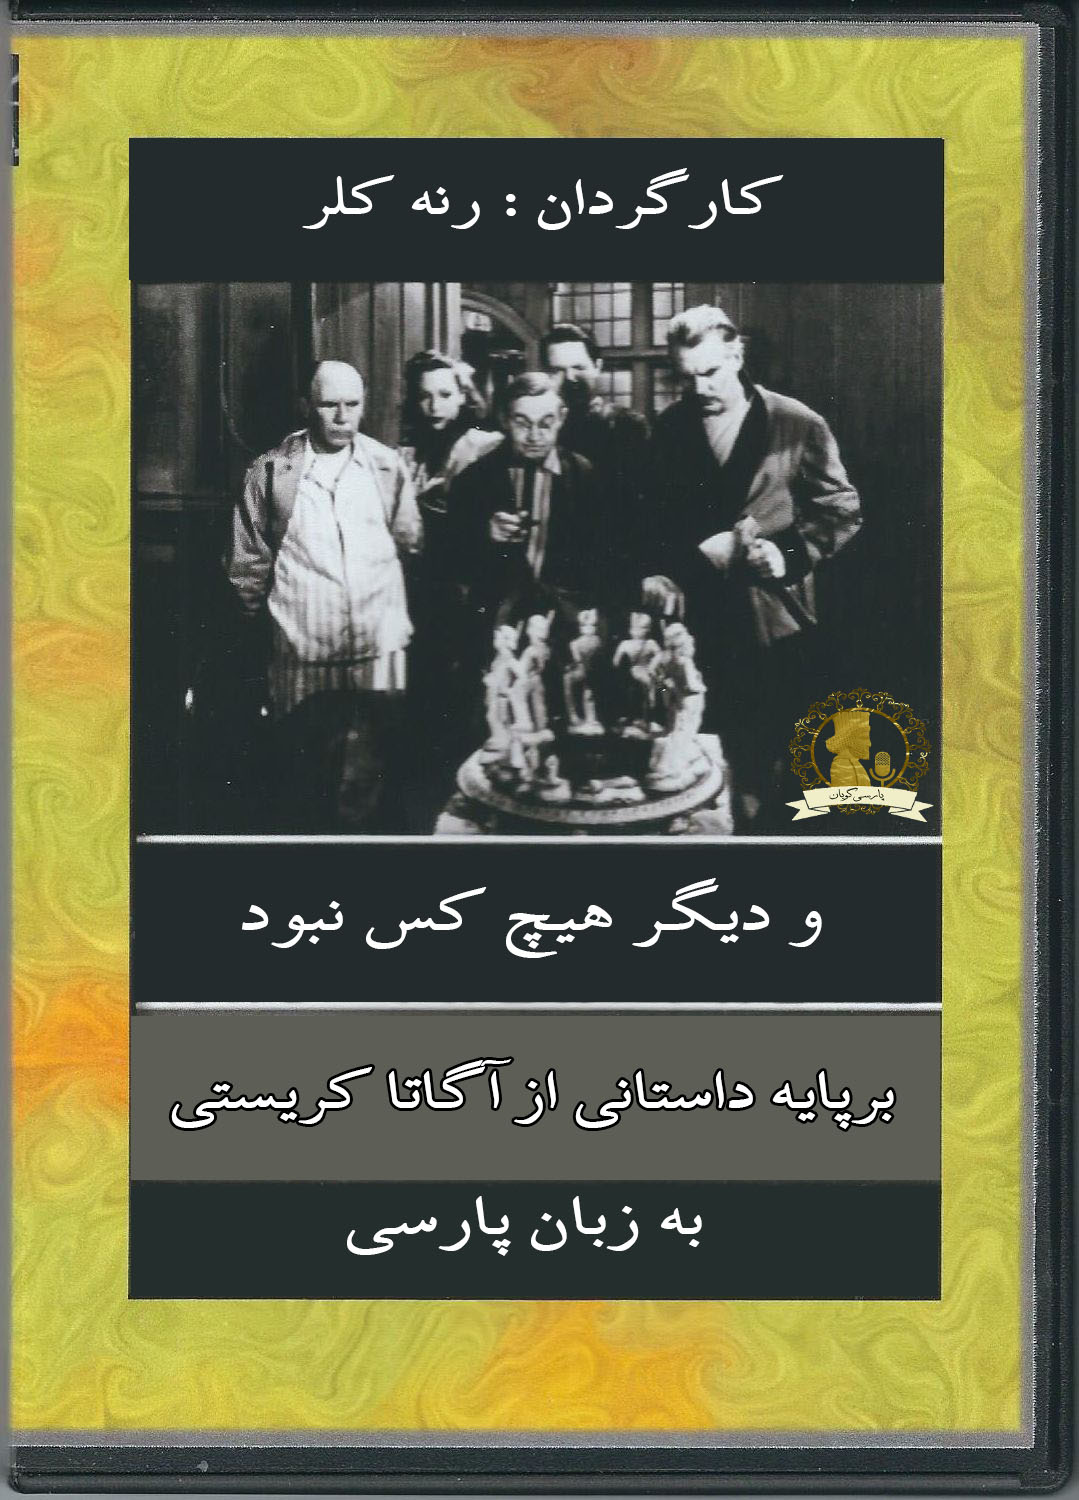 دانلود فیلم و دیگر هیچ کس نبود 1945 دوبله فارسی و سانسور شده